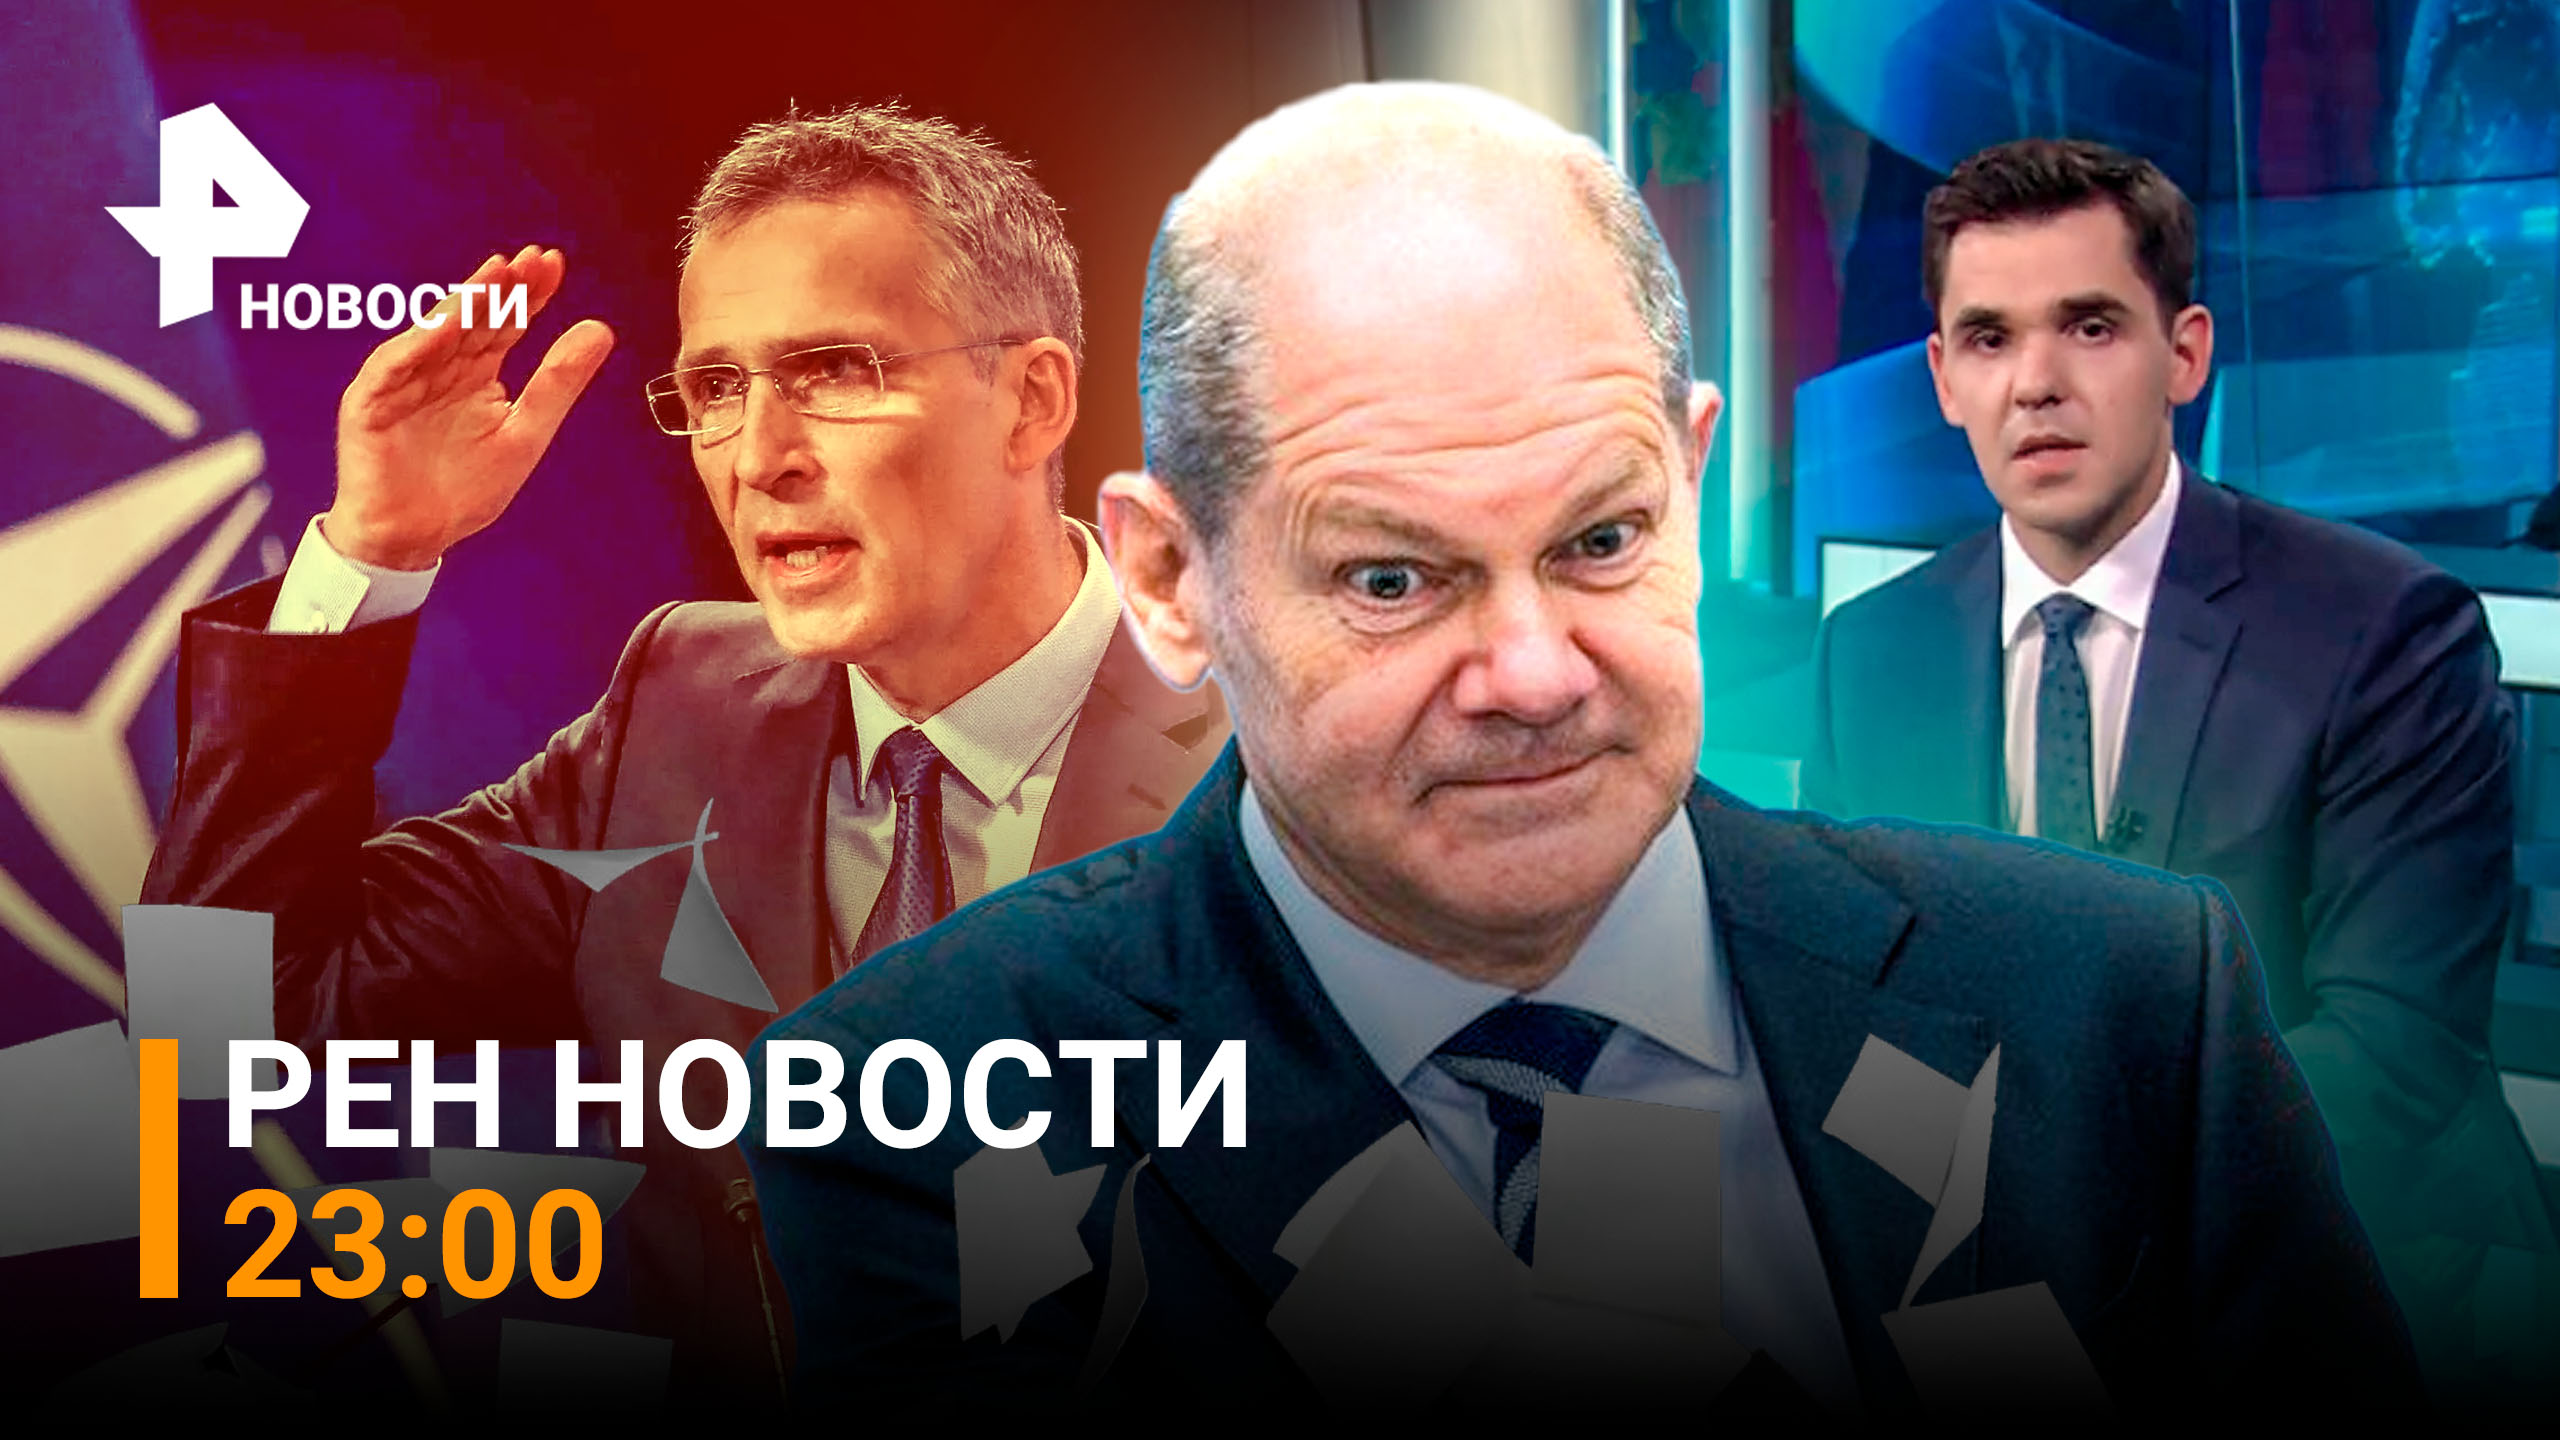 РЕН Новости 22 июля, 23:00: Скандалы вокруг Шольца — выкинул в помойку секретные документы о G7